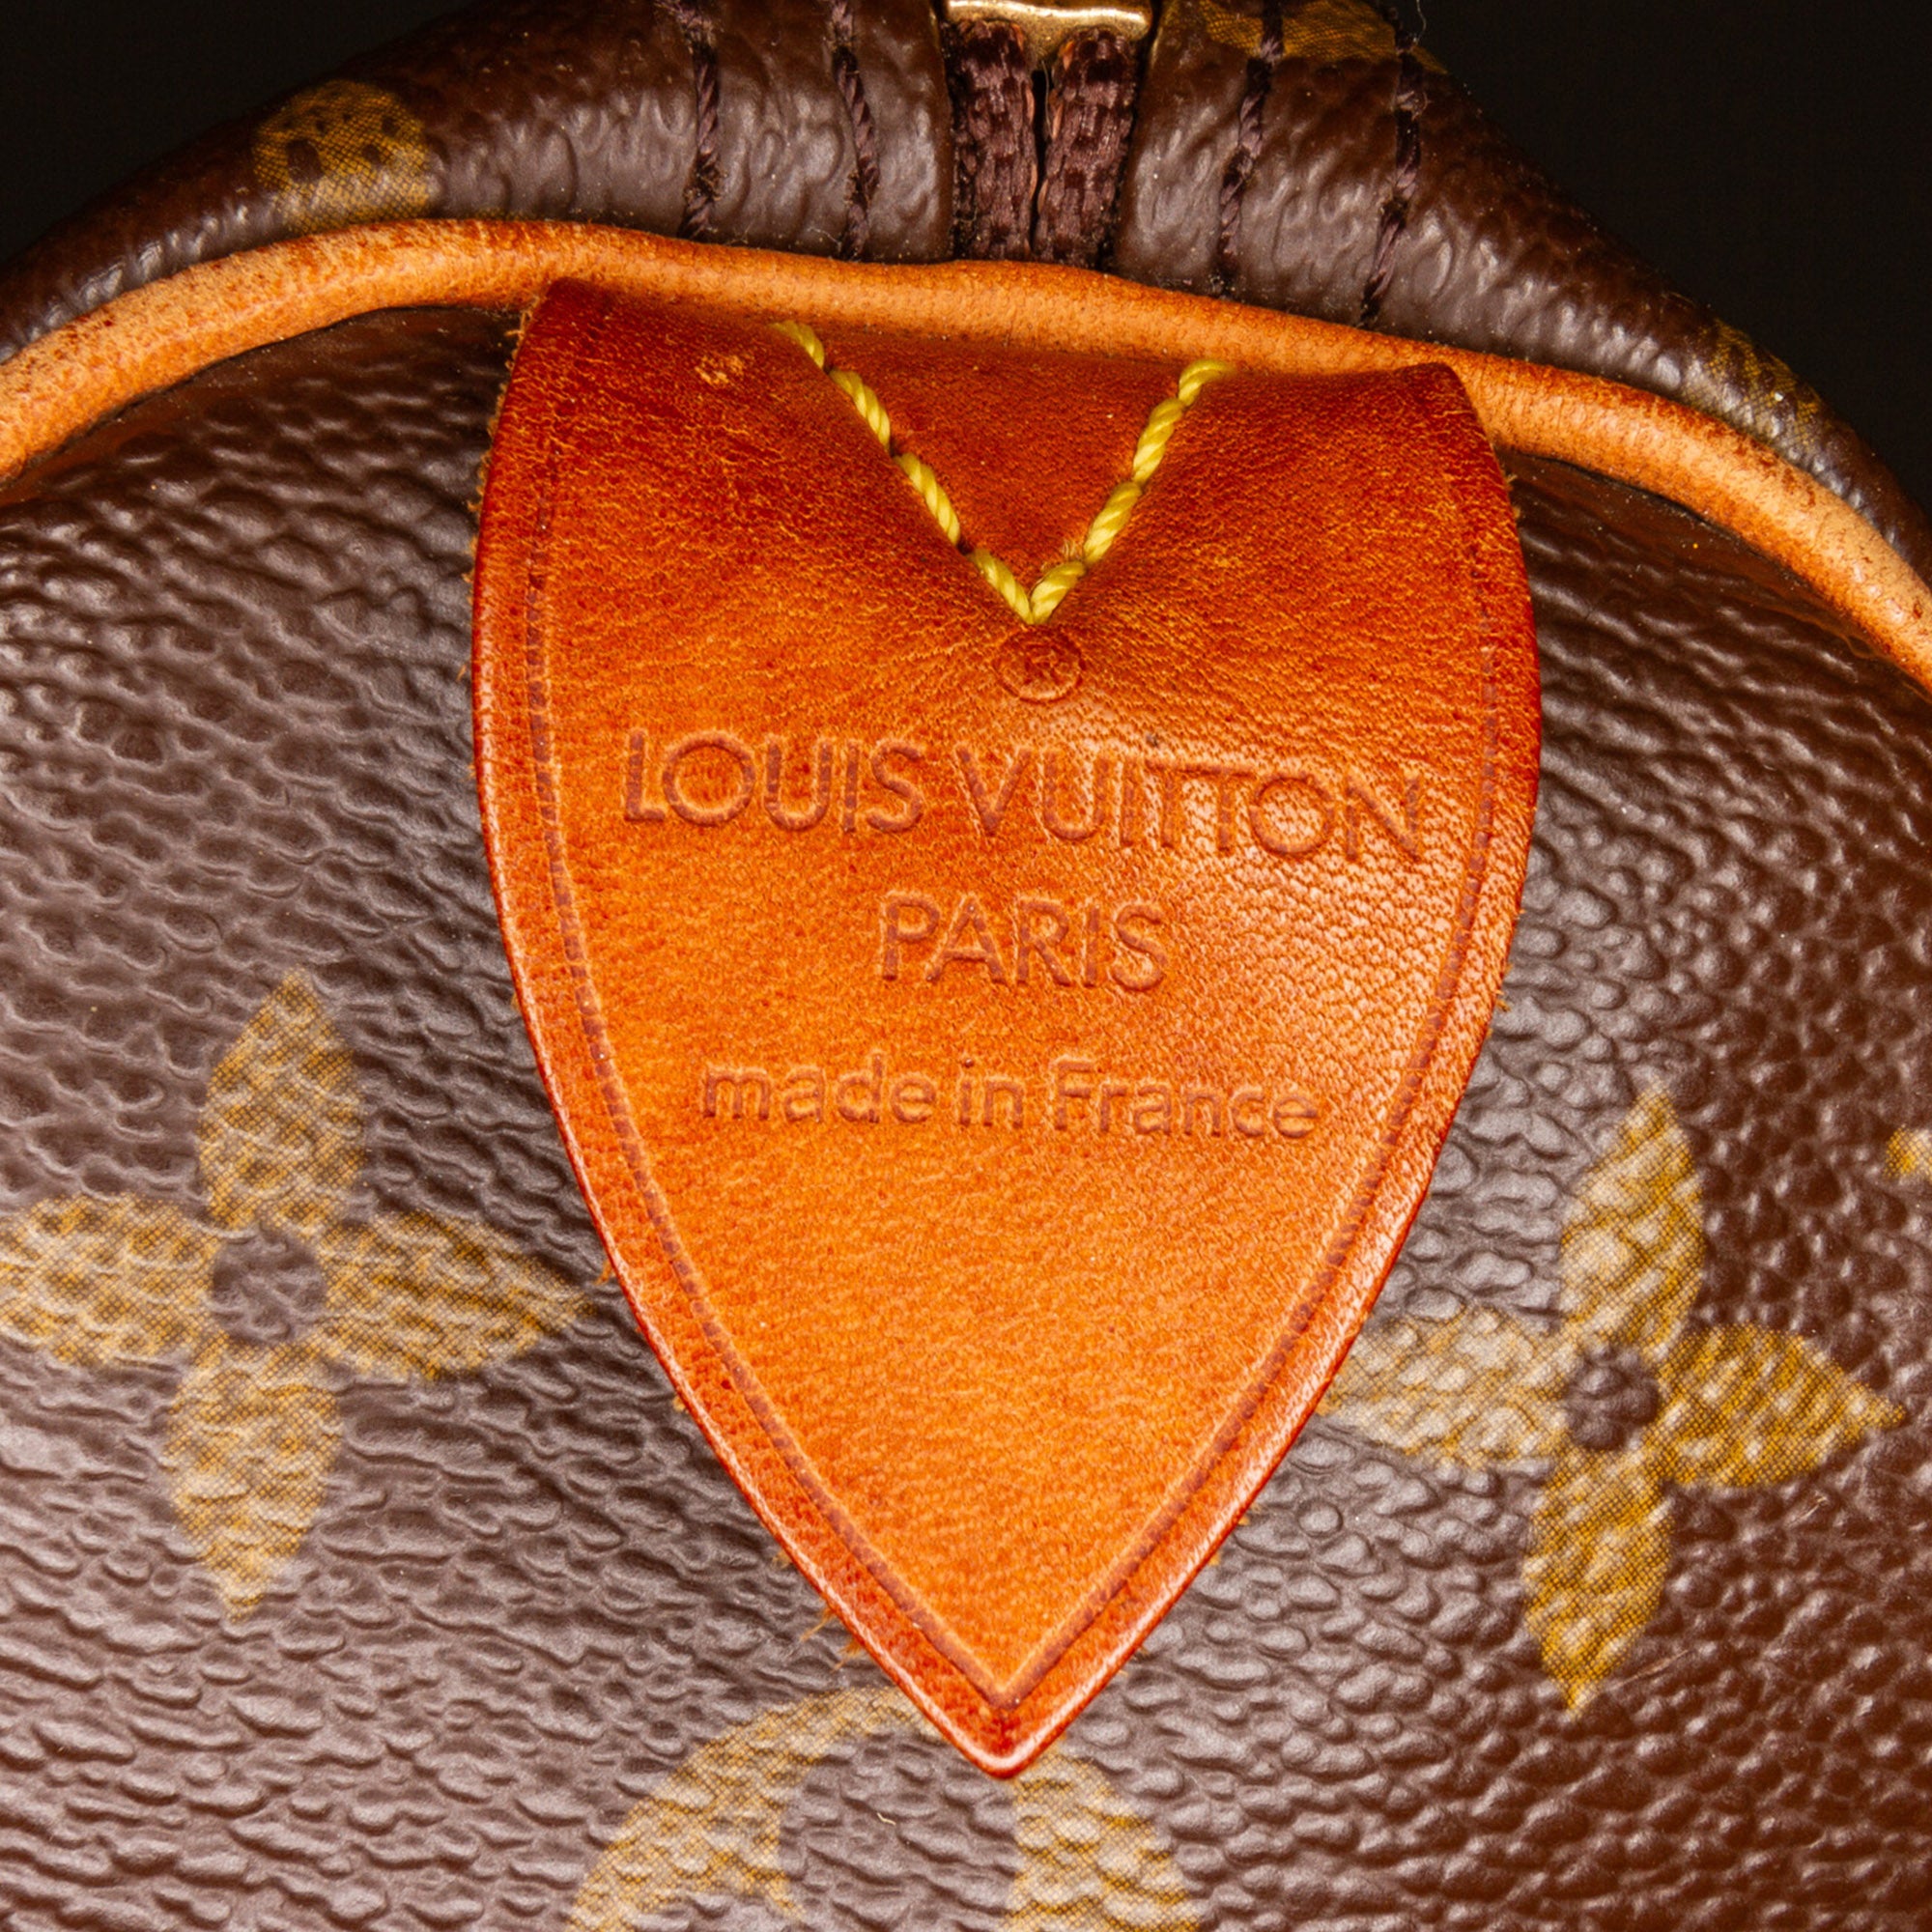 Louis Vuitton Speedy 35 Monogram Canvas